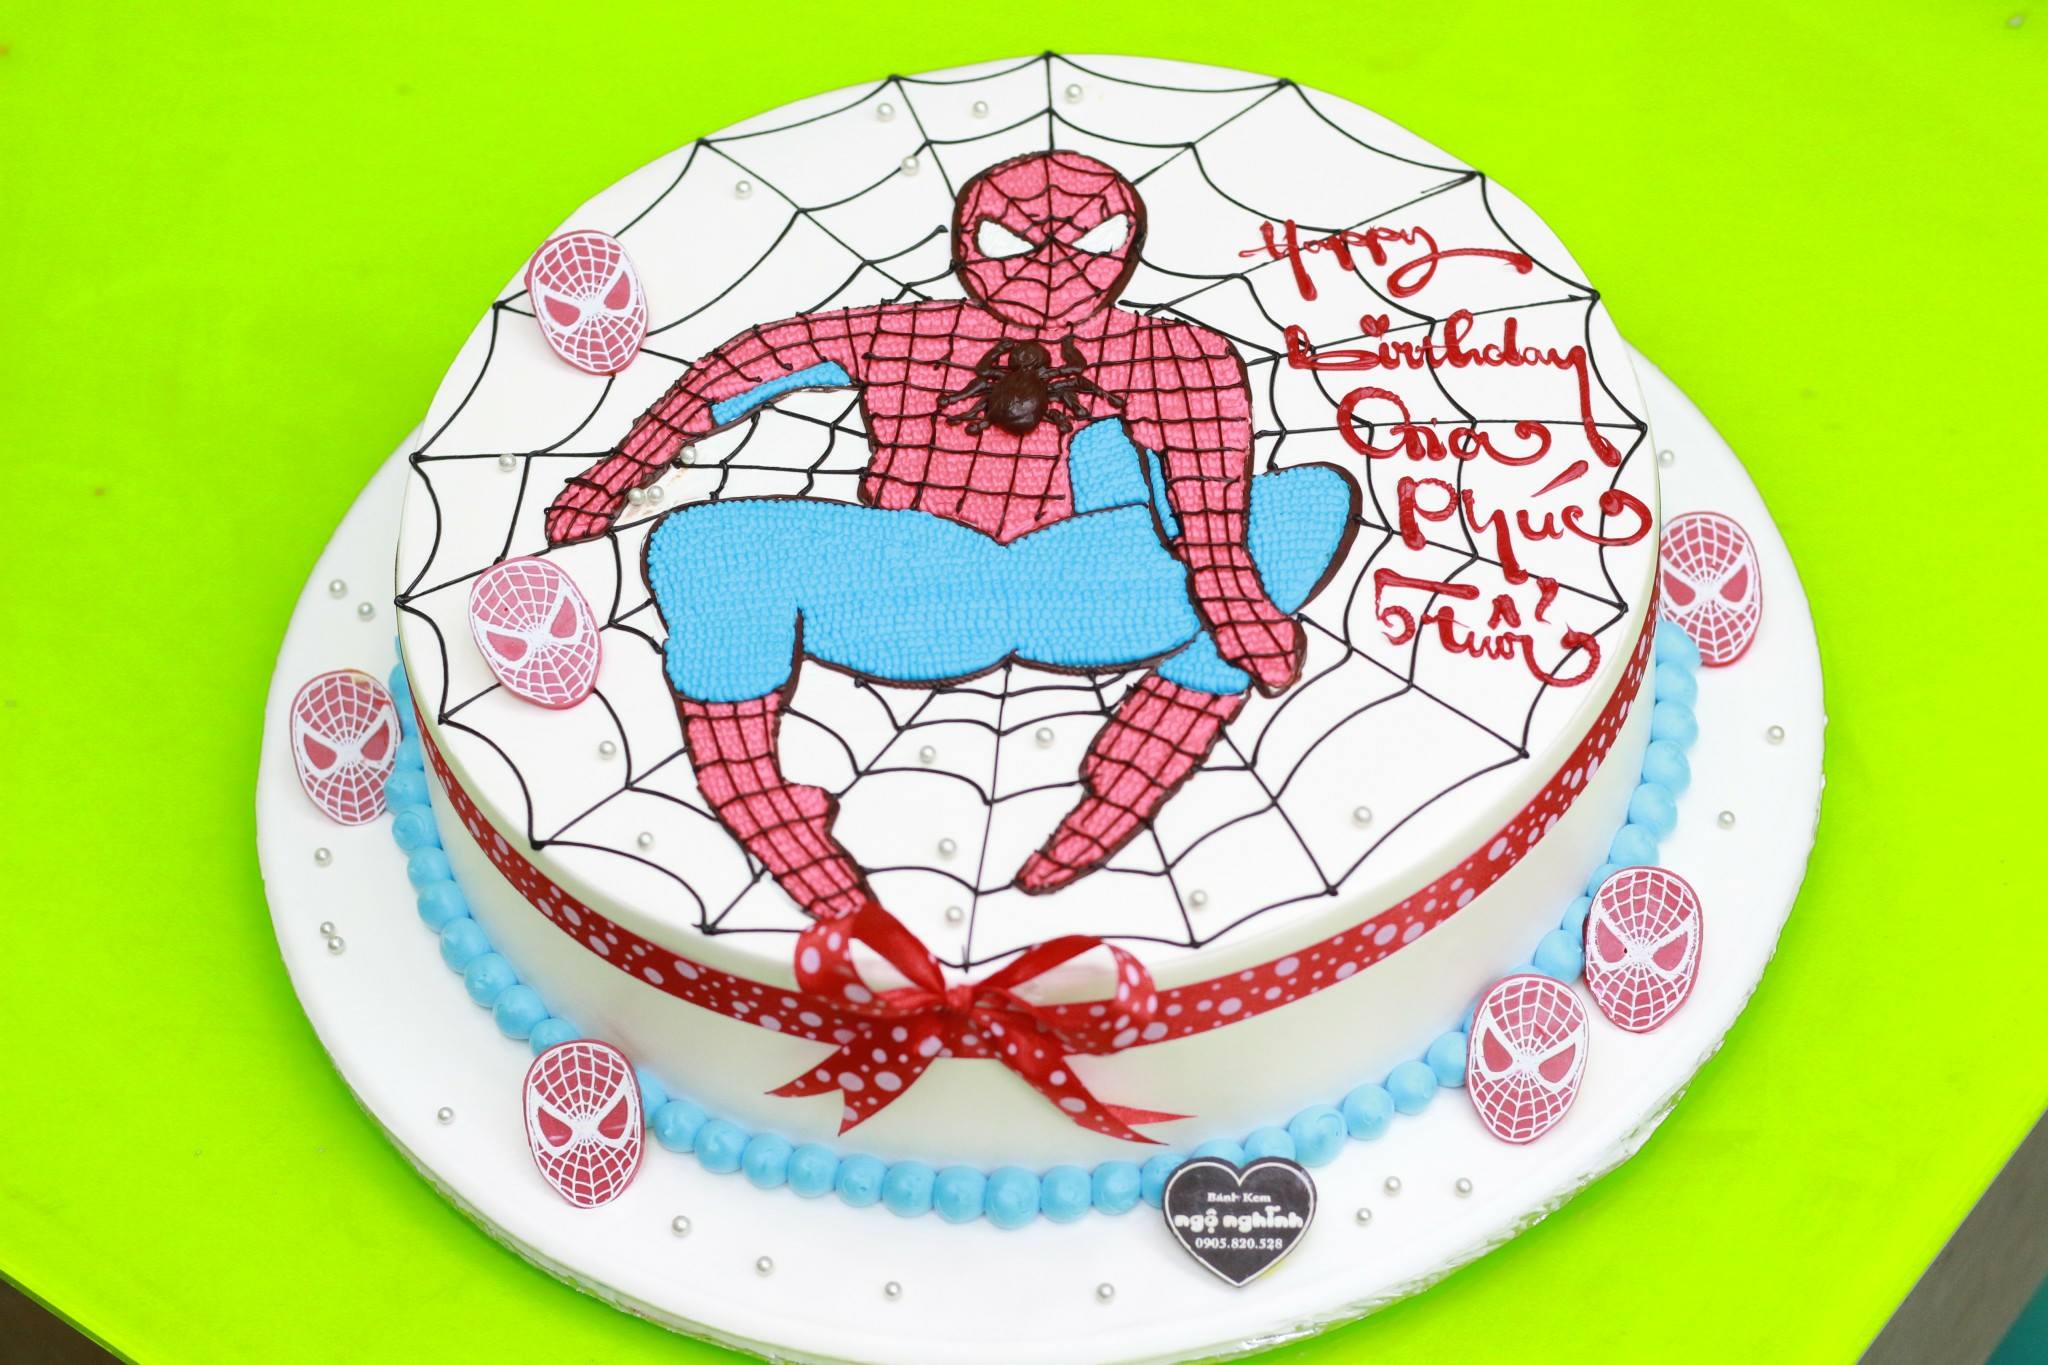 Khi nhắc đến bánh sinh nhật, hẳn ai cũng nghĩ đến hình ảnh đẹp mắt và ngộ nghĩnh. Hôm nay, chúng tôi xin giới thiệu đến bạn bánh sinh nhật vẽ hình người nhện nghệ thuật. Hãy cùng thưởng thức và tận hưởng hương vị thơm ngon và màu sắc tuyệt vời của bánh này.